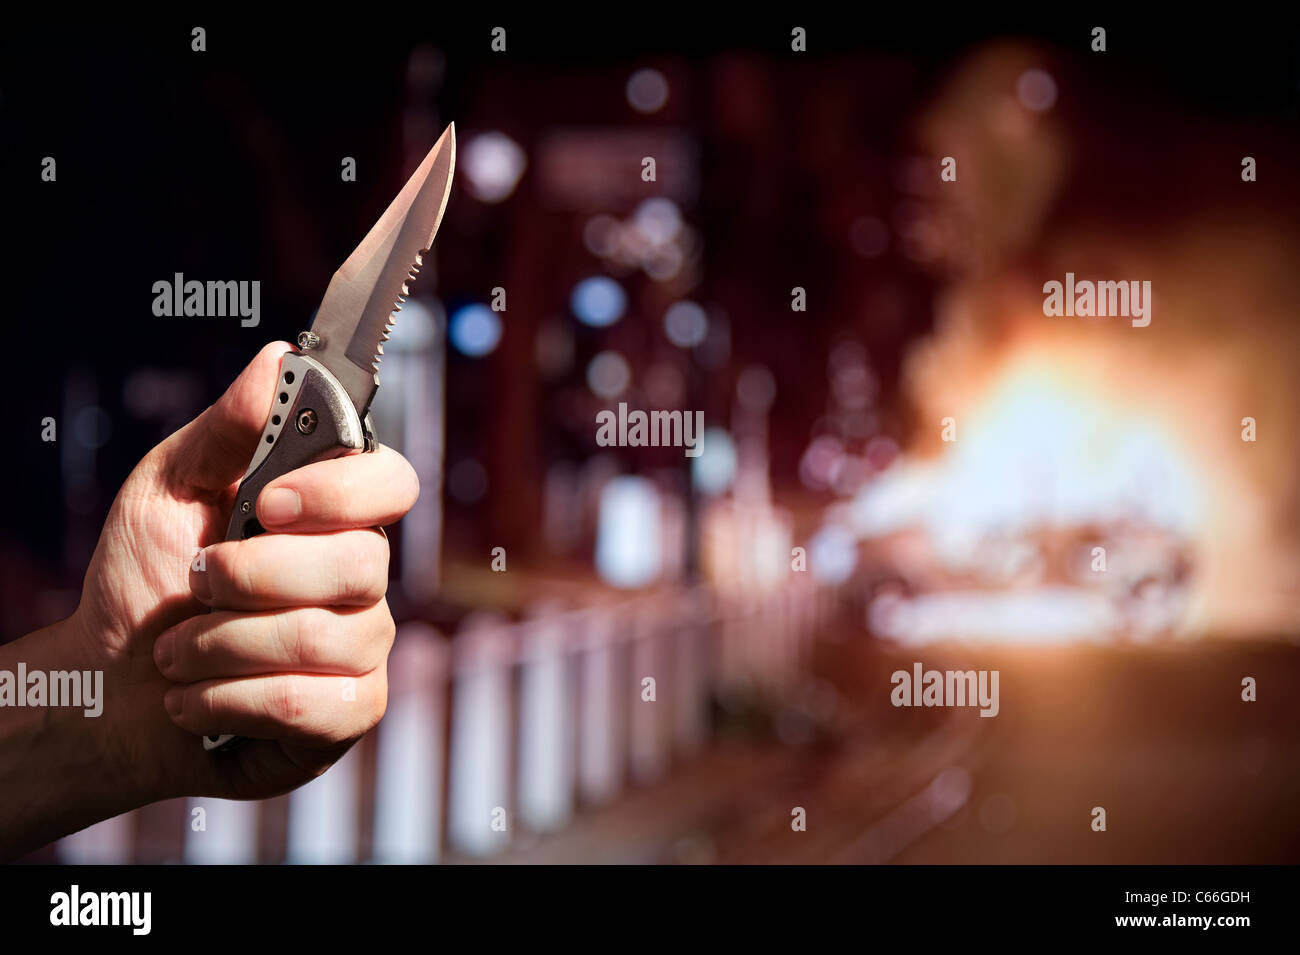 Couteau Crime / Émeutes / Concept De Violence. Tenir à la main un couteau avec un bord dentelé pendant qu'une voiture brûle à l'arrière-plan. Londres Royaume-Uni Banque D'Images